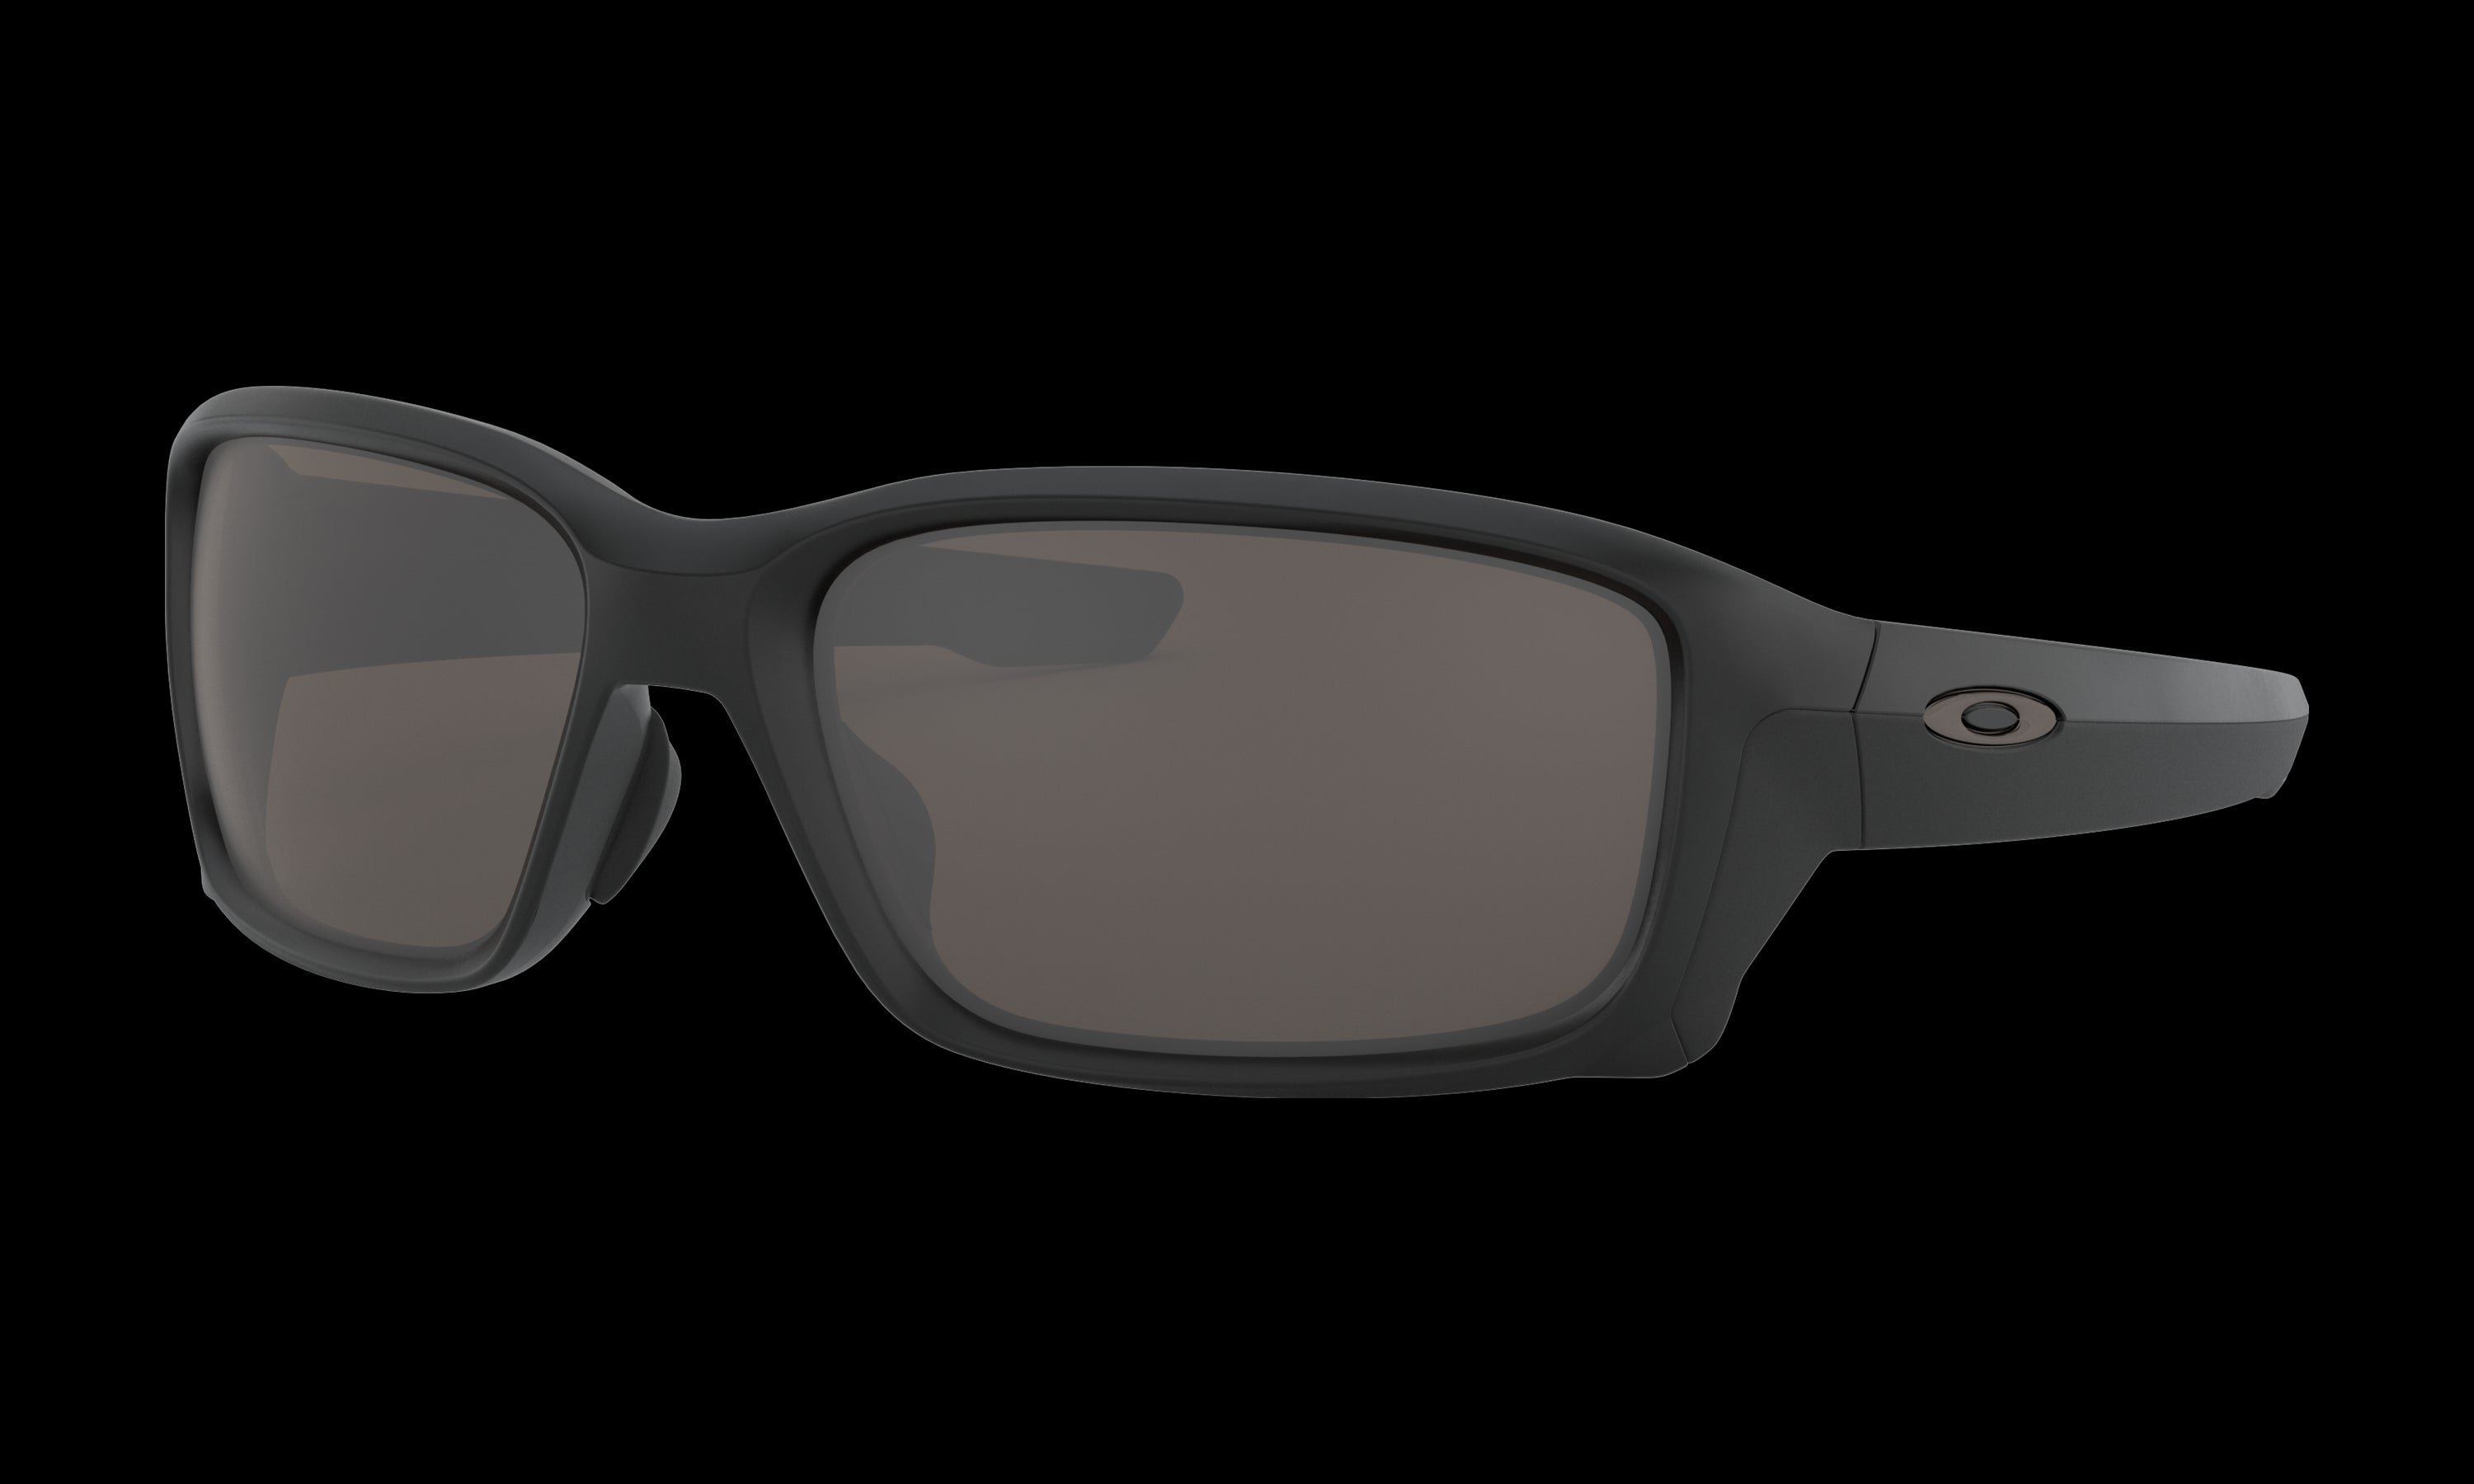 Men's Oakley Straightlink (Asia Fit) Sunglasses in Matte Black Warm Grey